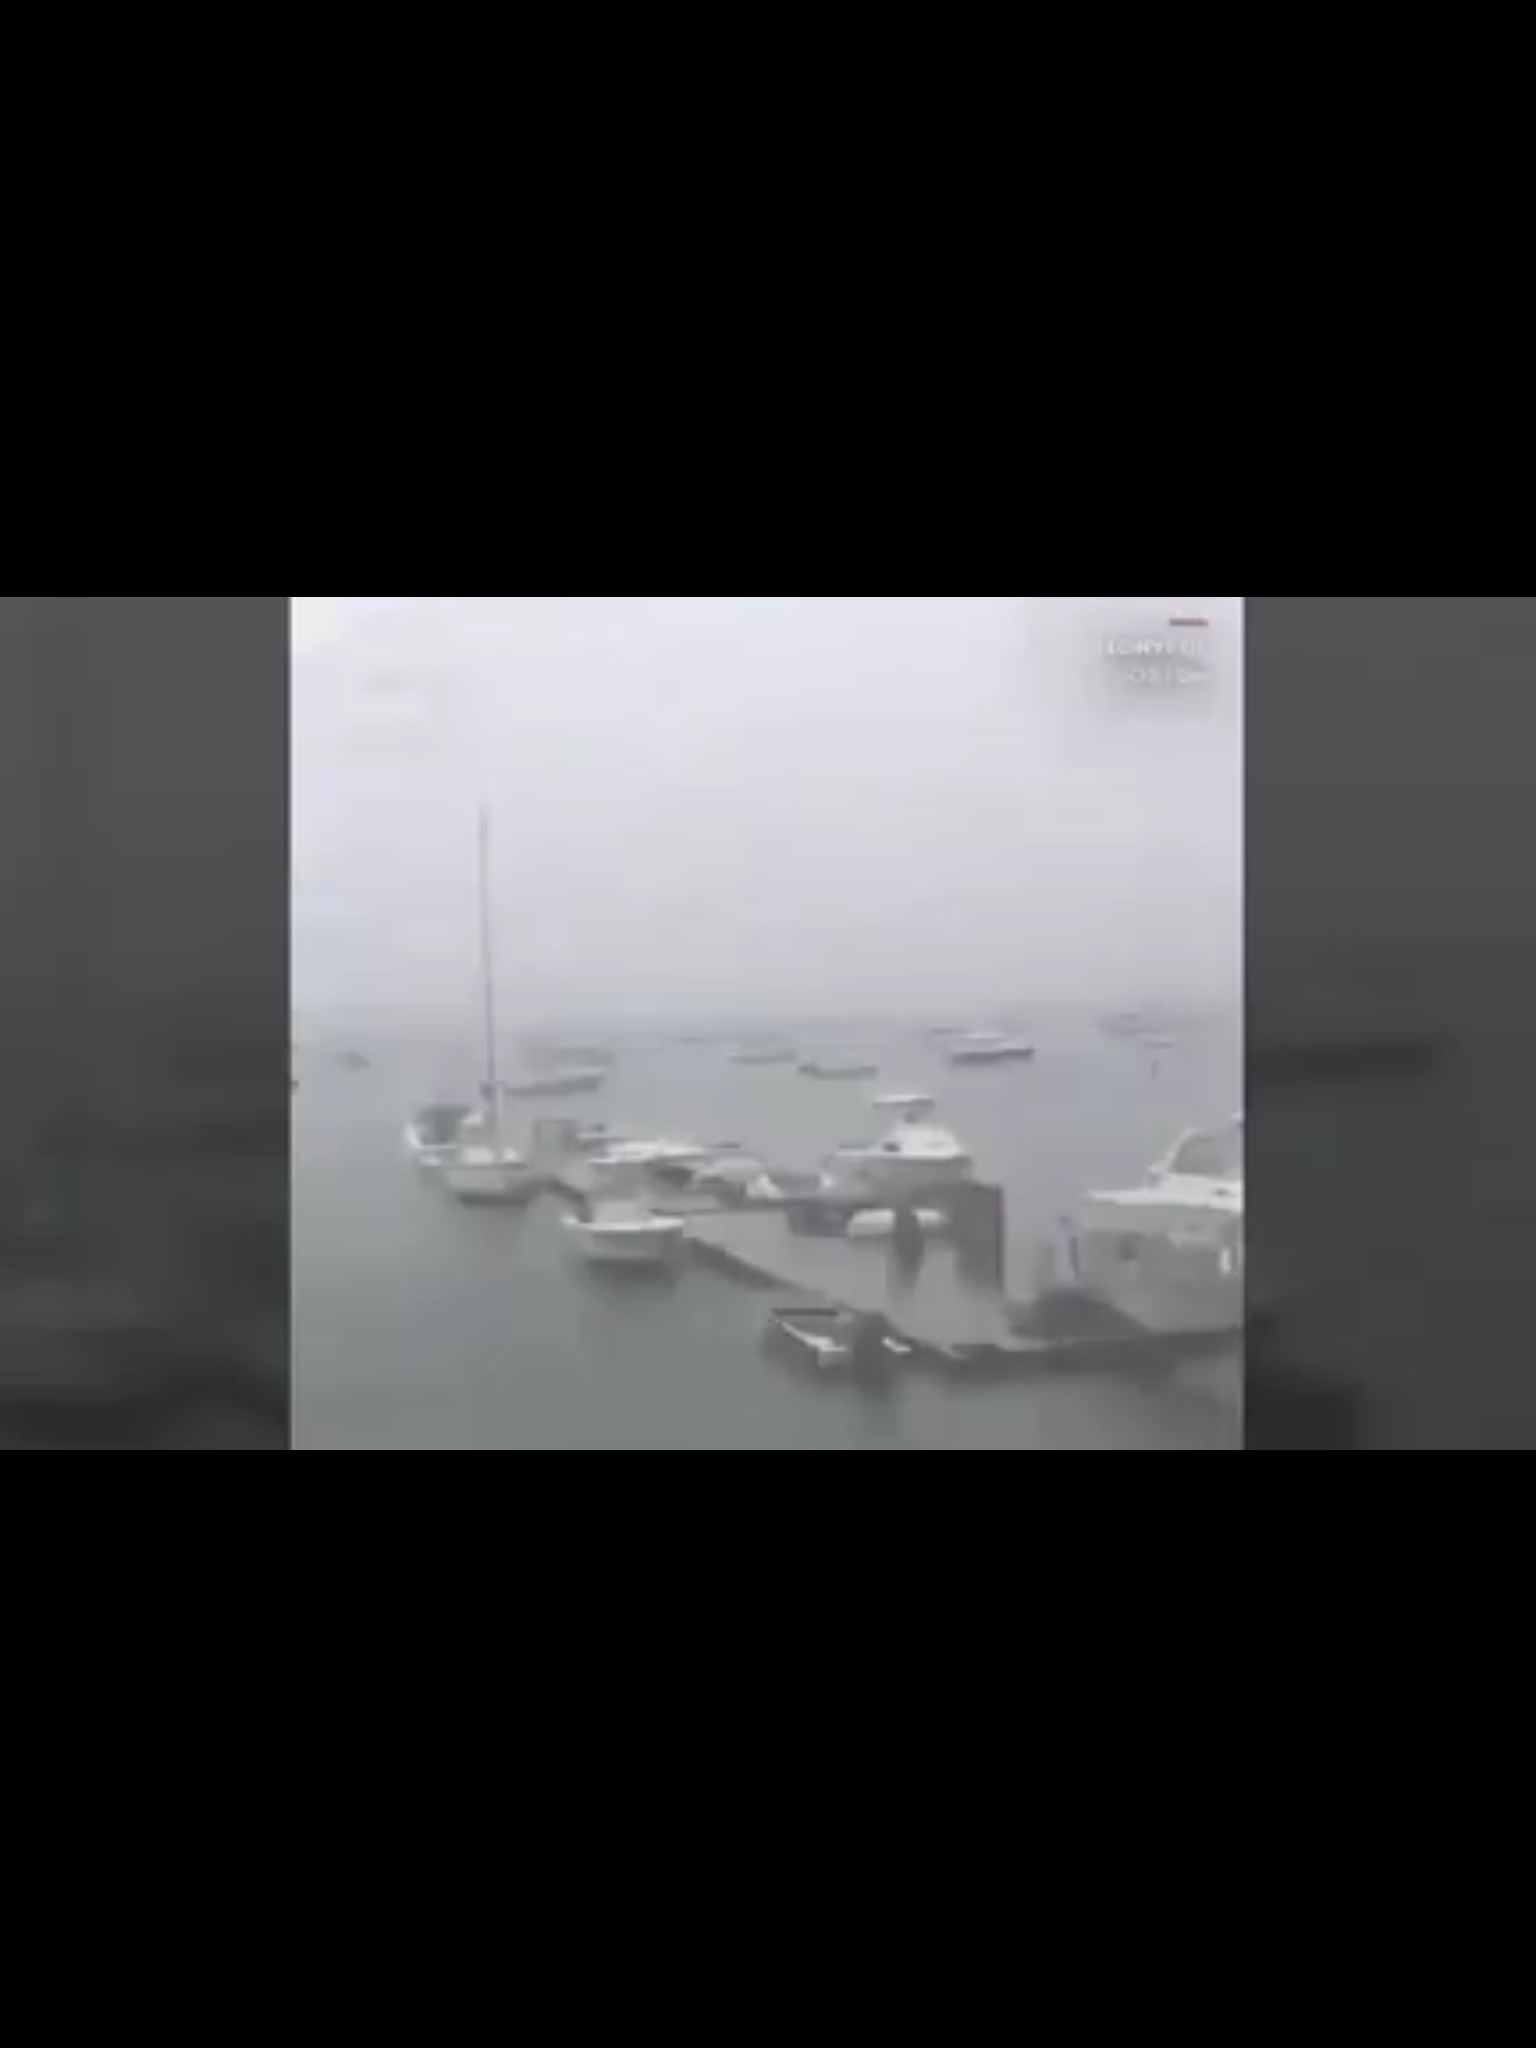 🚨🎥 فیلم هولناک از  لحظه برخورد یک رعد و برق به قایق بادبانی در جنوب بوستون